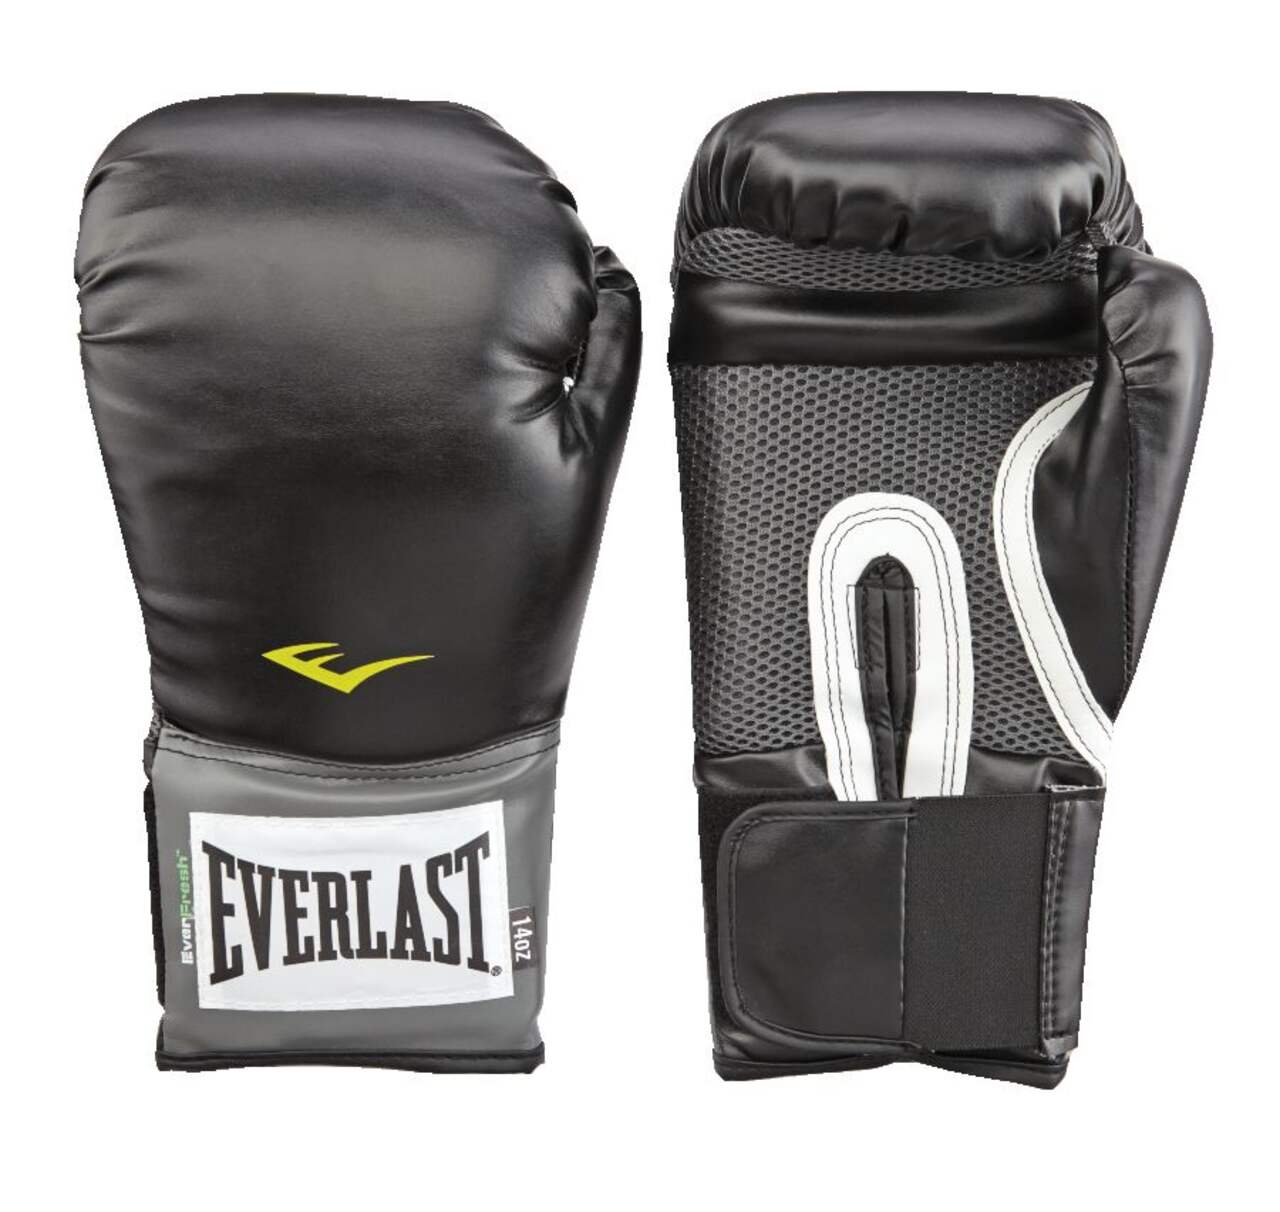 Everlast Partner Training Boxing Gloves and Punch Mitt Kit, Black